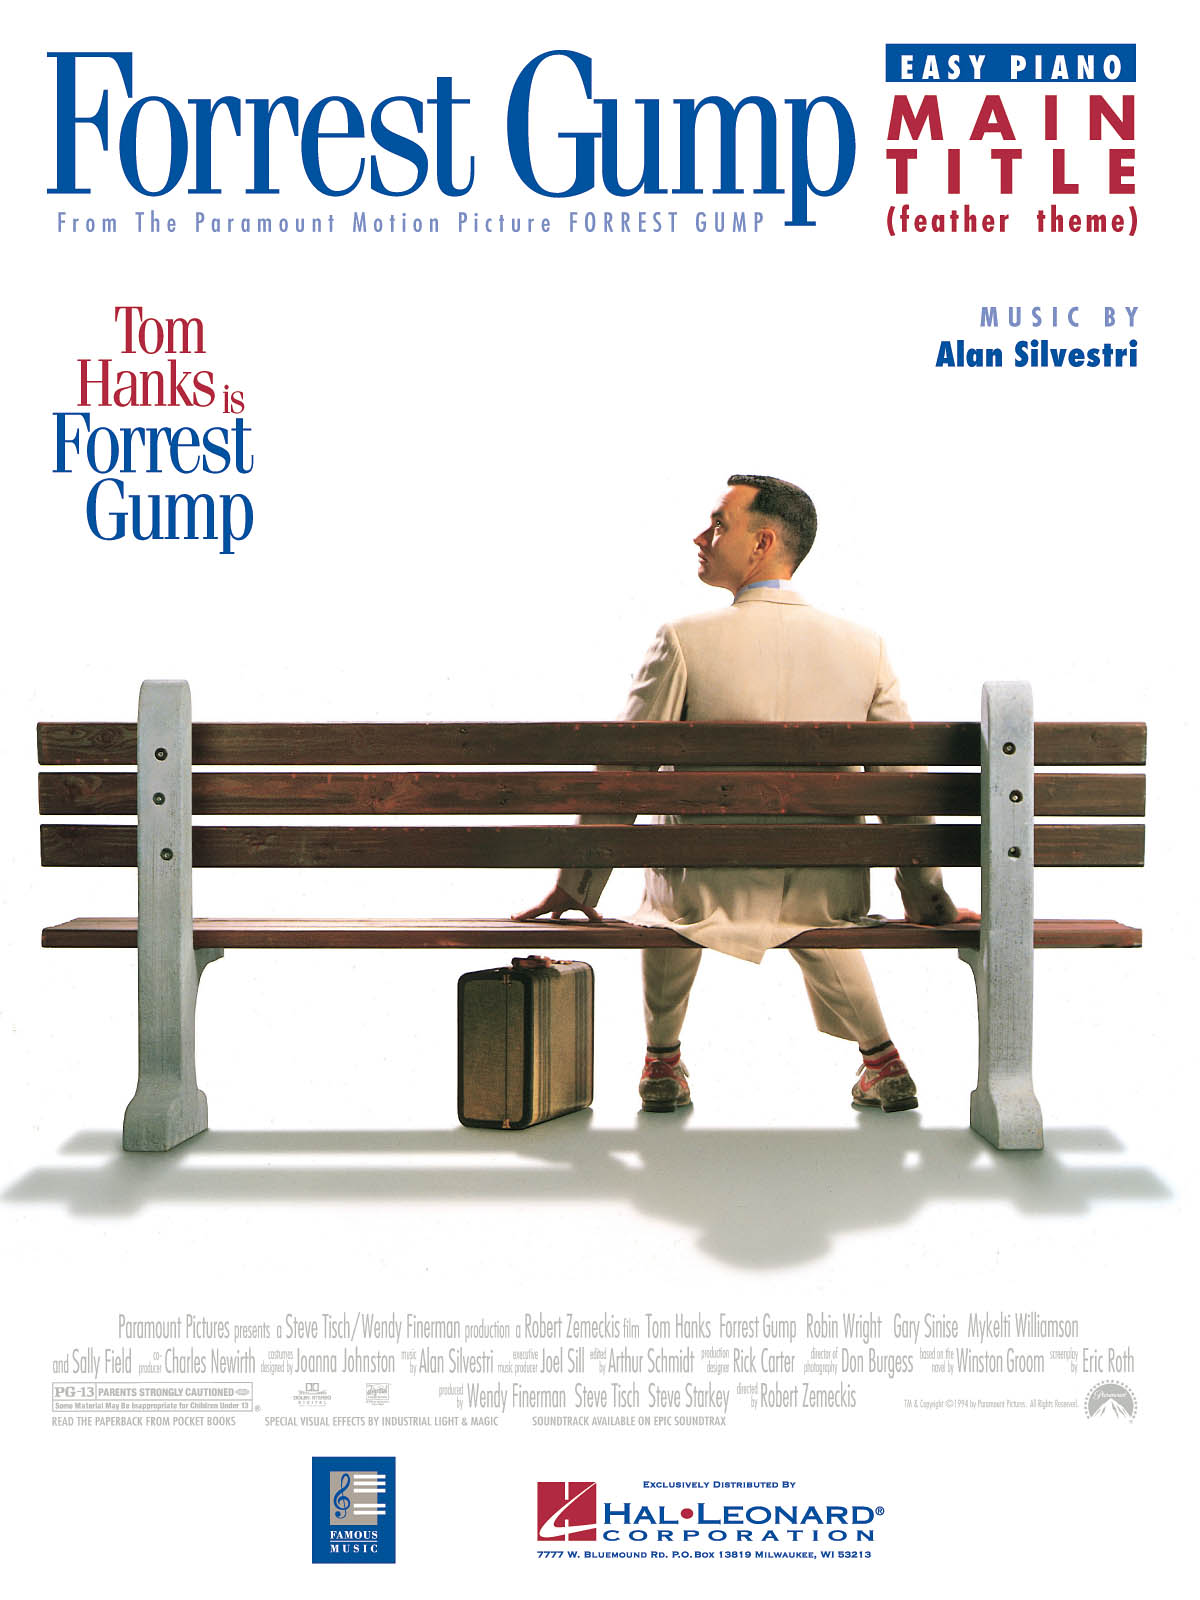 Forrest Gump Main Title (Feather Theme) - filmové melodie pro začátečníky